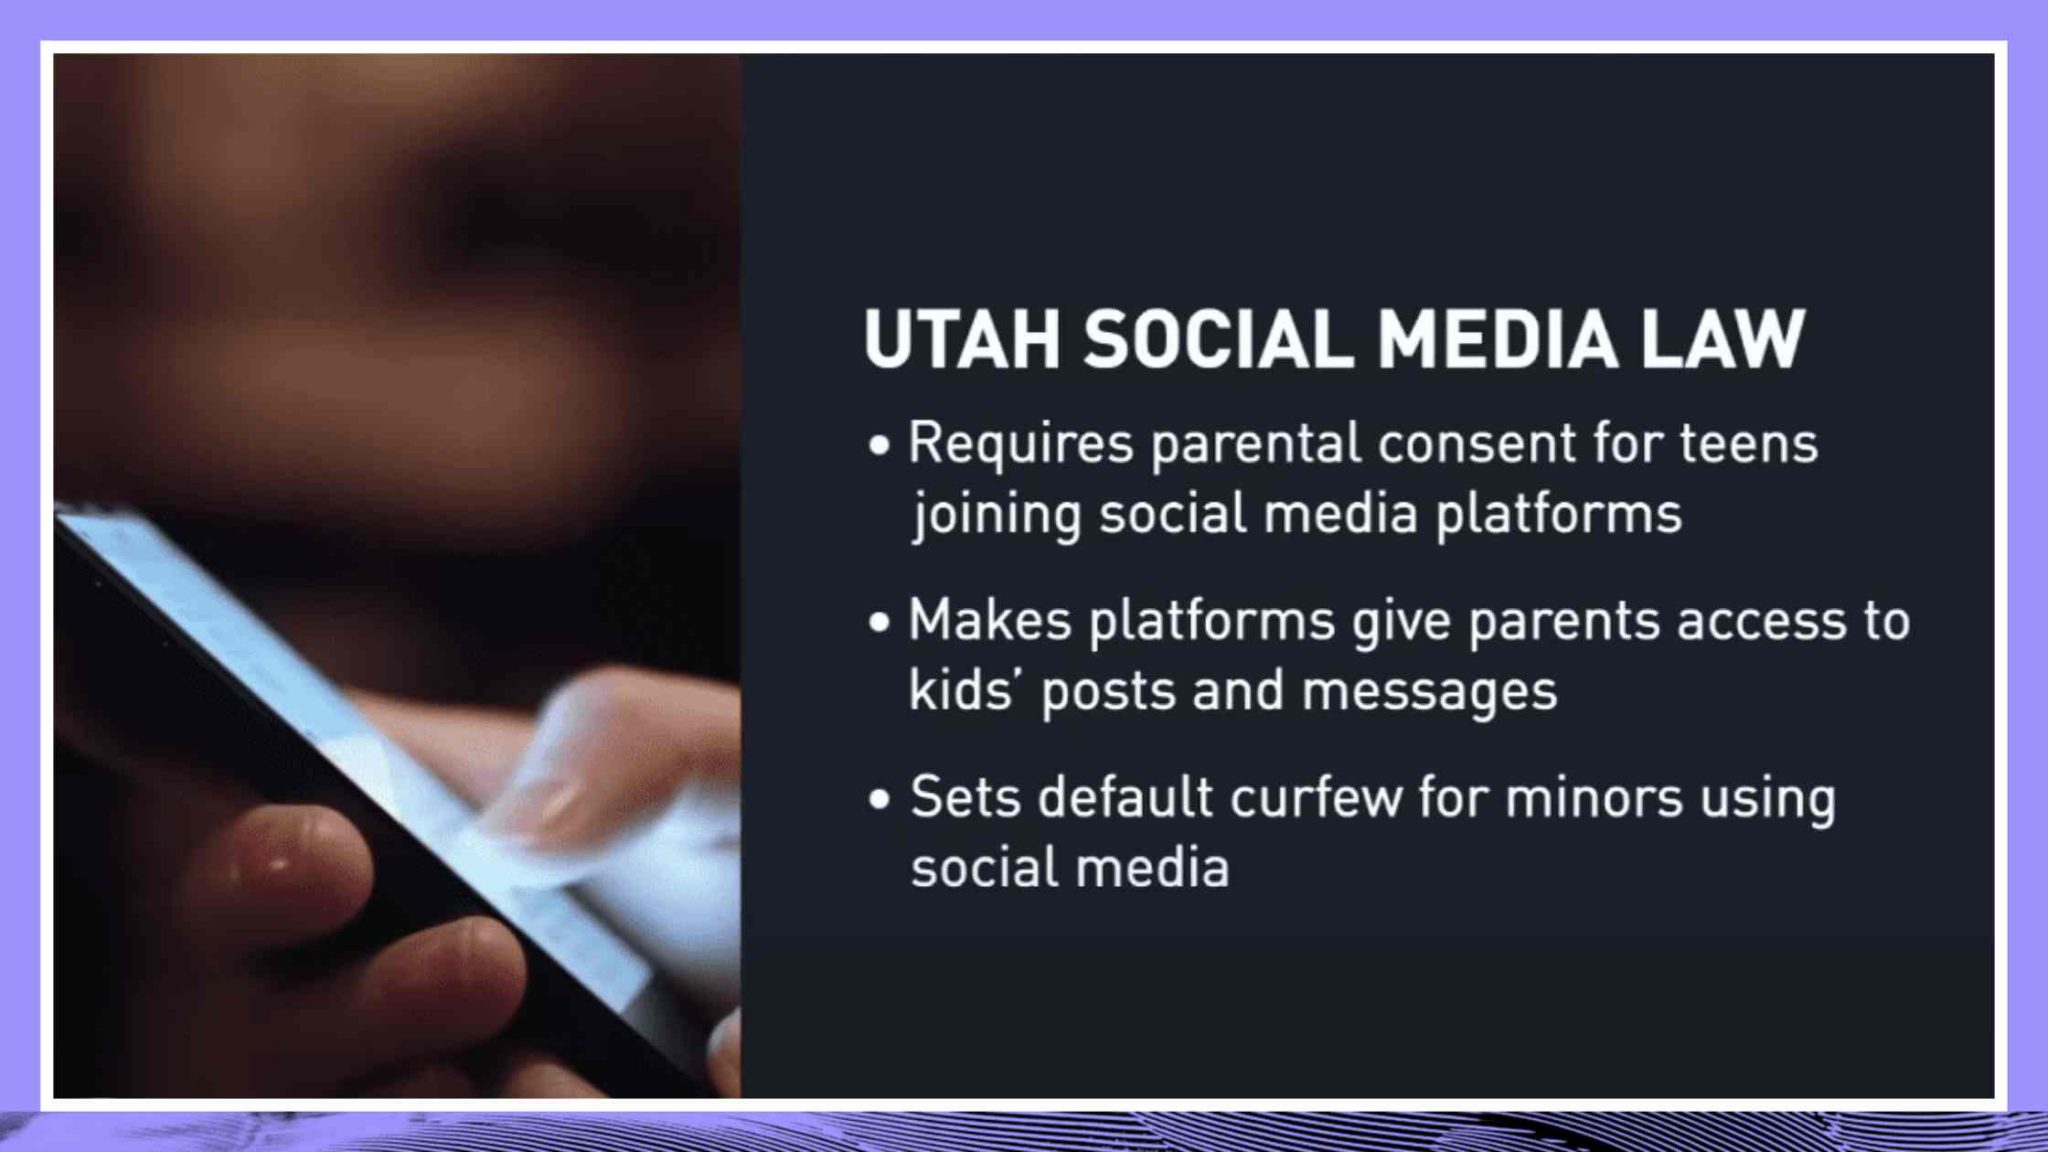 犹他州法律可能大幅限制青少年访问社交媒体成绩单